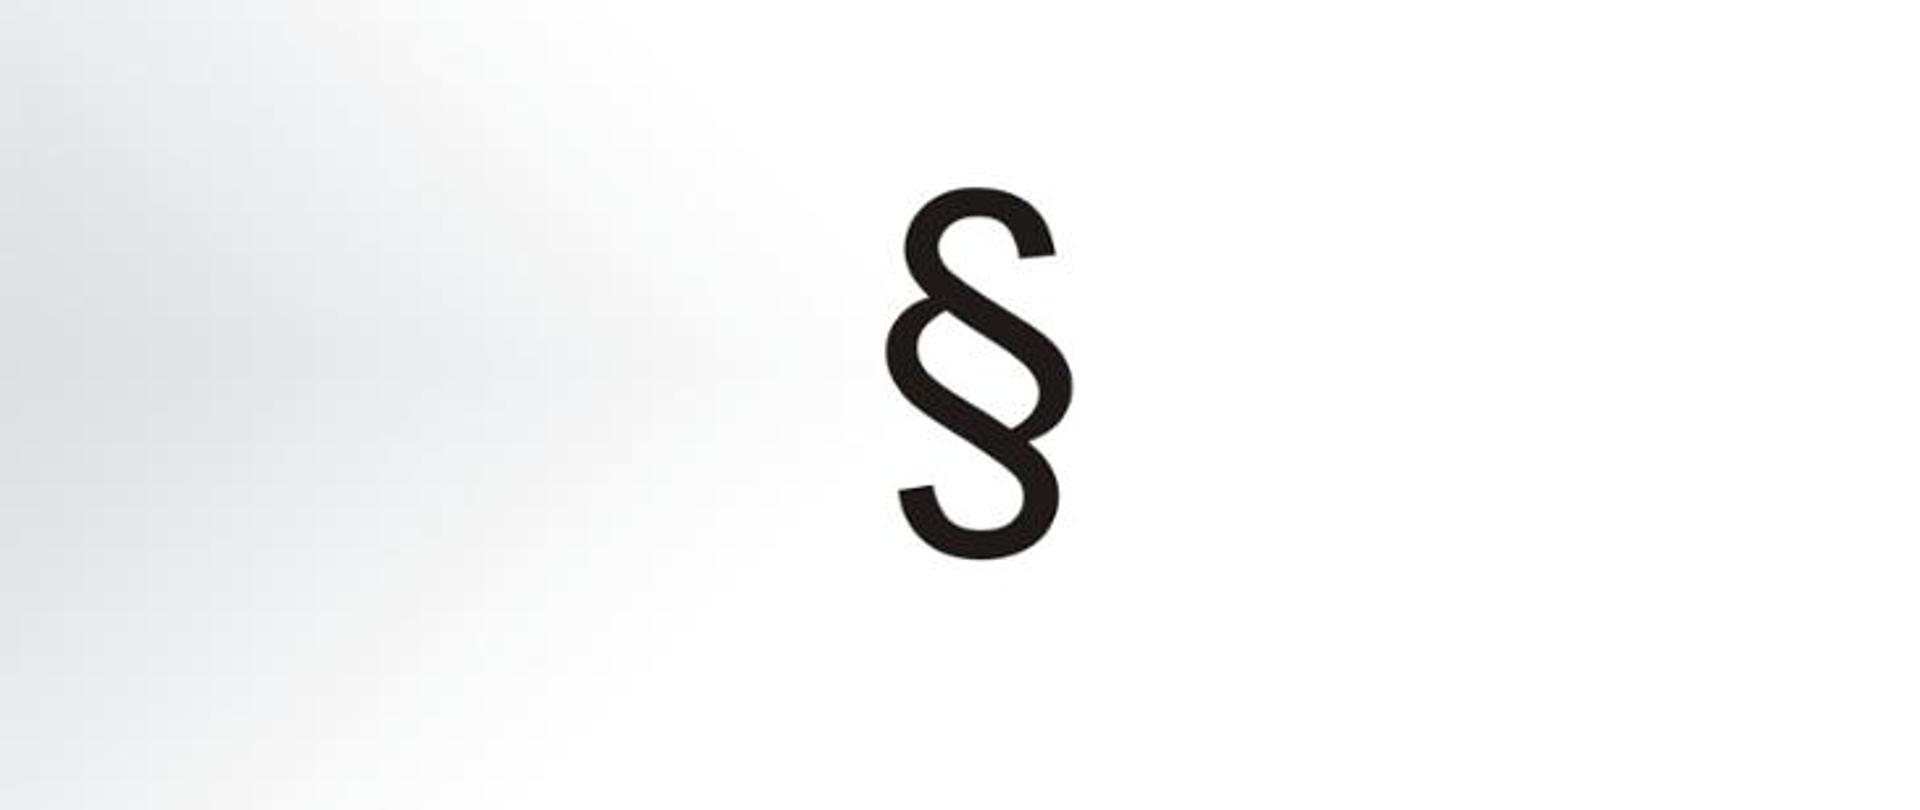 Zdjęcie przedstawia logo paragrafu na białym tle